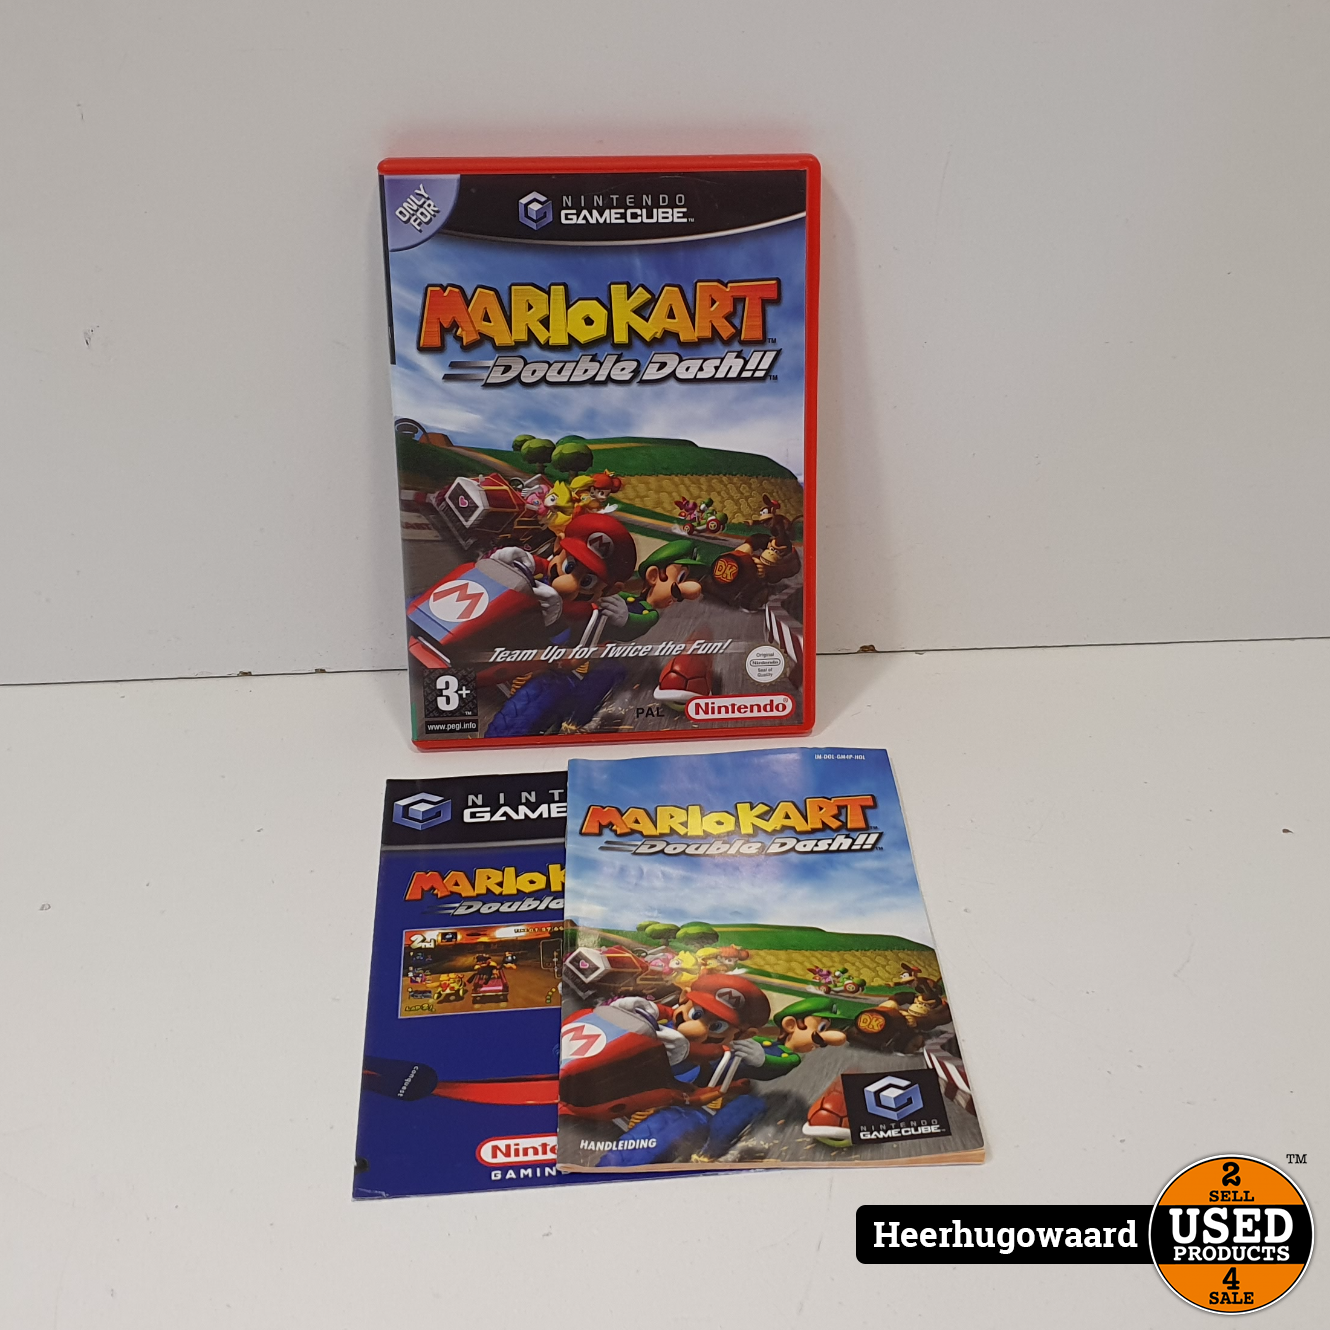 Hij leerboek Autonomie Gamecube Game: Mario Kart Double Dash Compleet in Nette Staat - Used  Products Heerhugowaard